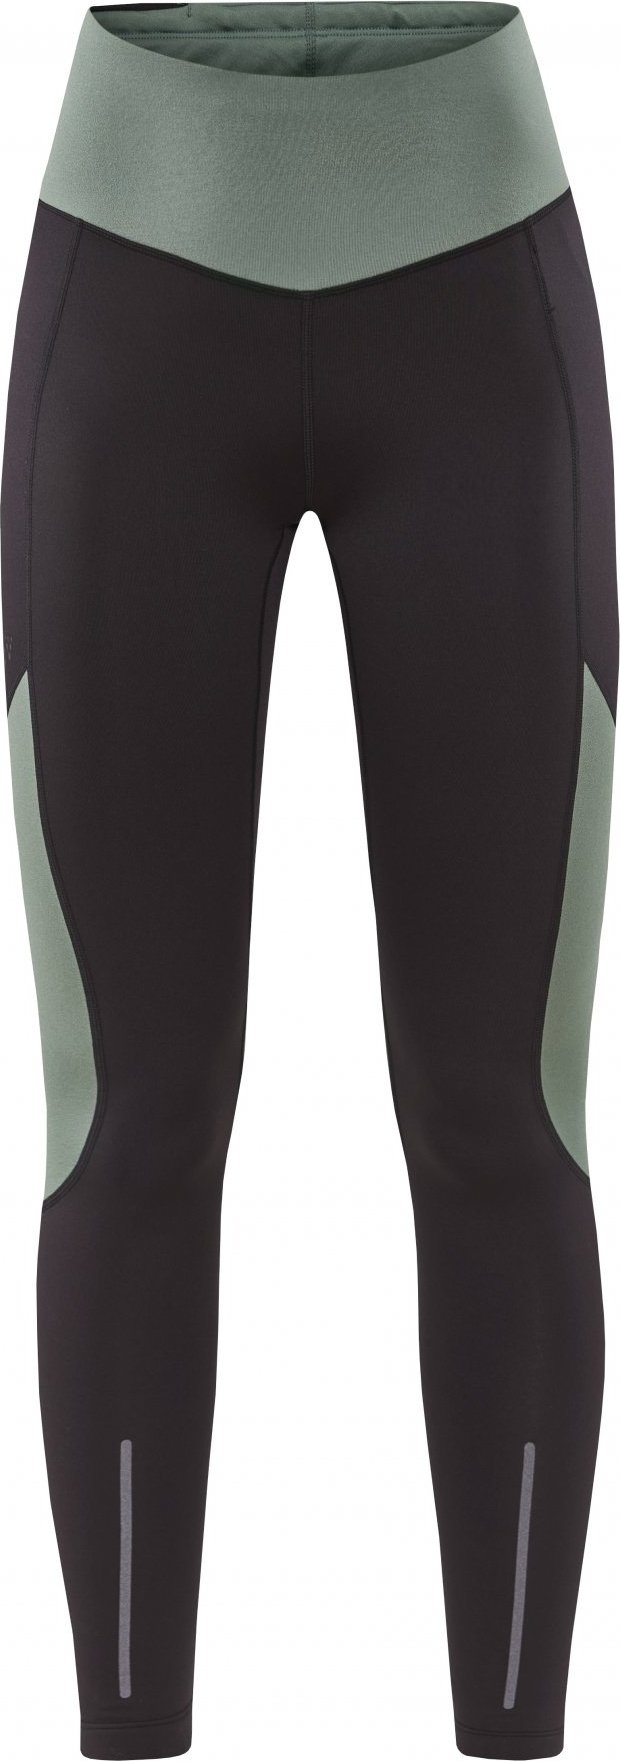 Dámské elastické kalhoty CRAFT Adv Essence Warm Tights šedé Velikost: XS